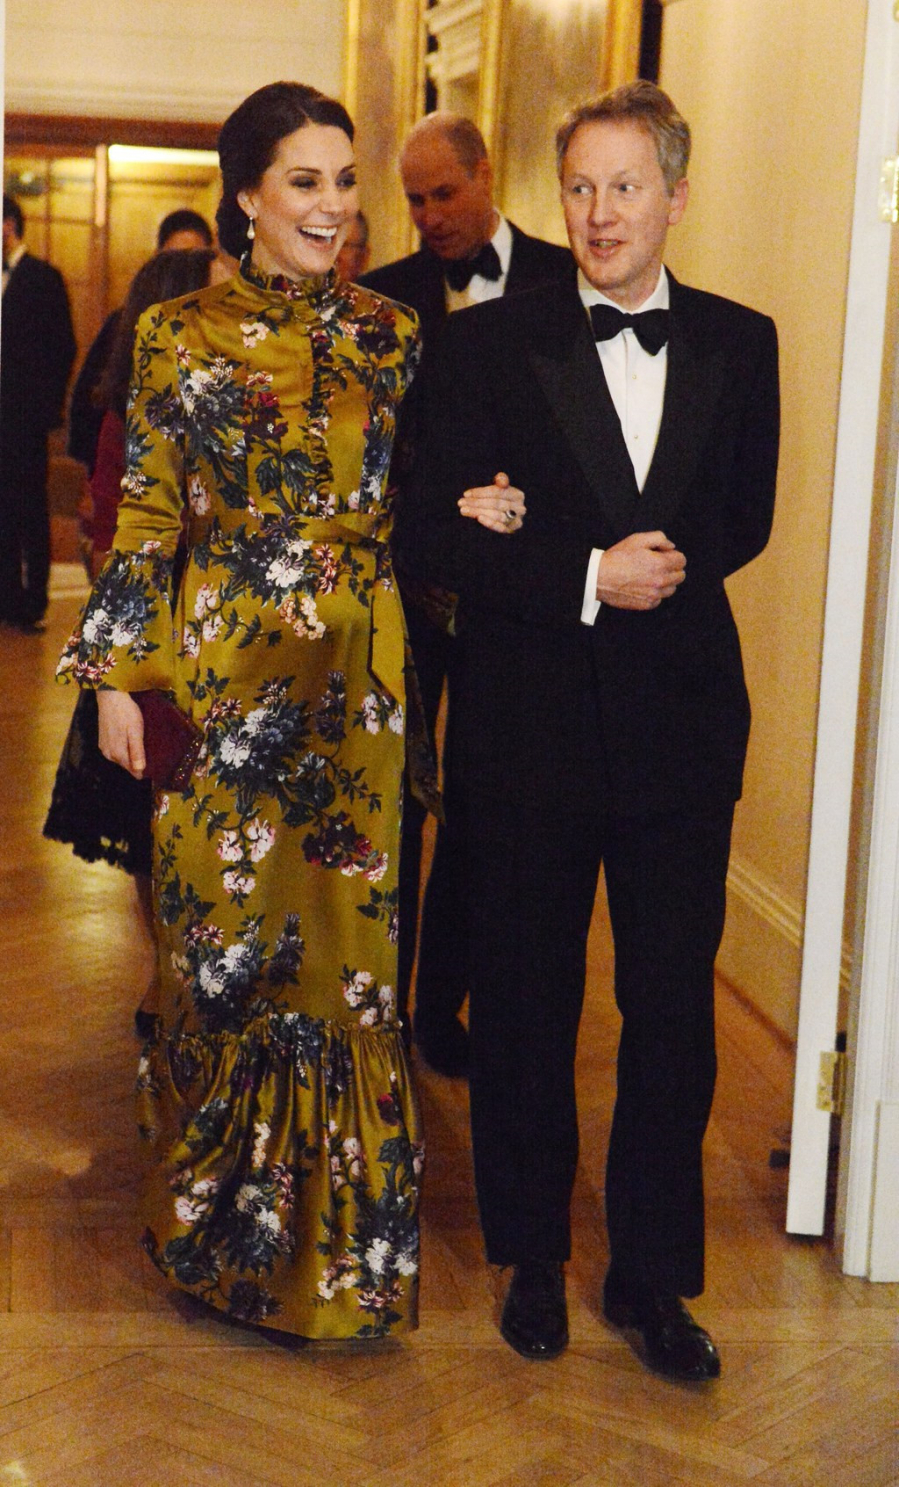 Kate Middleton diện thiết kế của thương hiệu Erdem, giày và túi xách của nhà mốt Jimmy Choco. Chiếc đầm họa tiết hoa dài phần nào che đi phần bụng của công nương Anh, giúp tôn lên được vẻ quý phái cho cô cùng với kiểu tóc bới cao. 